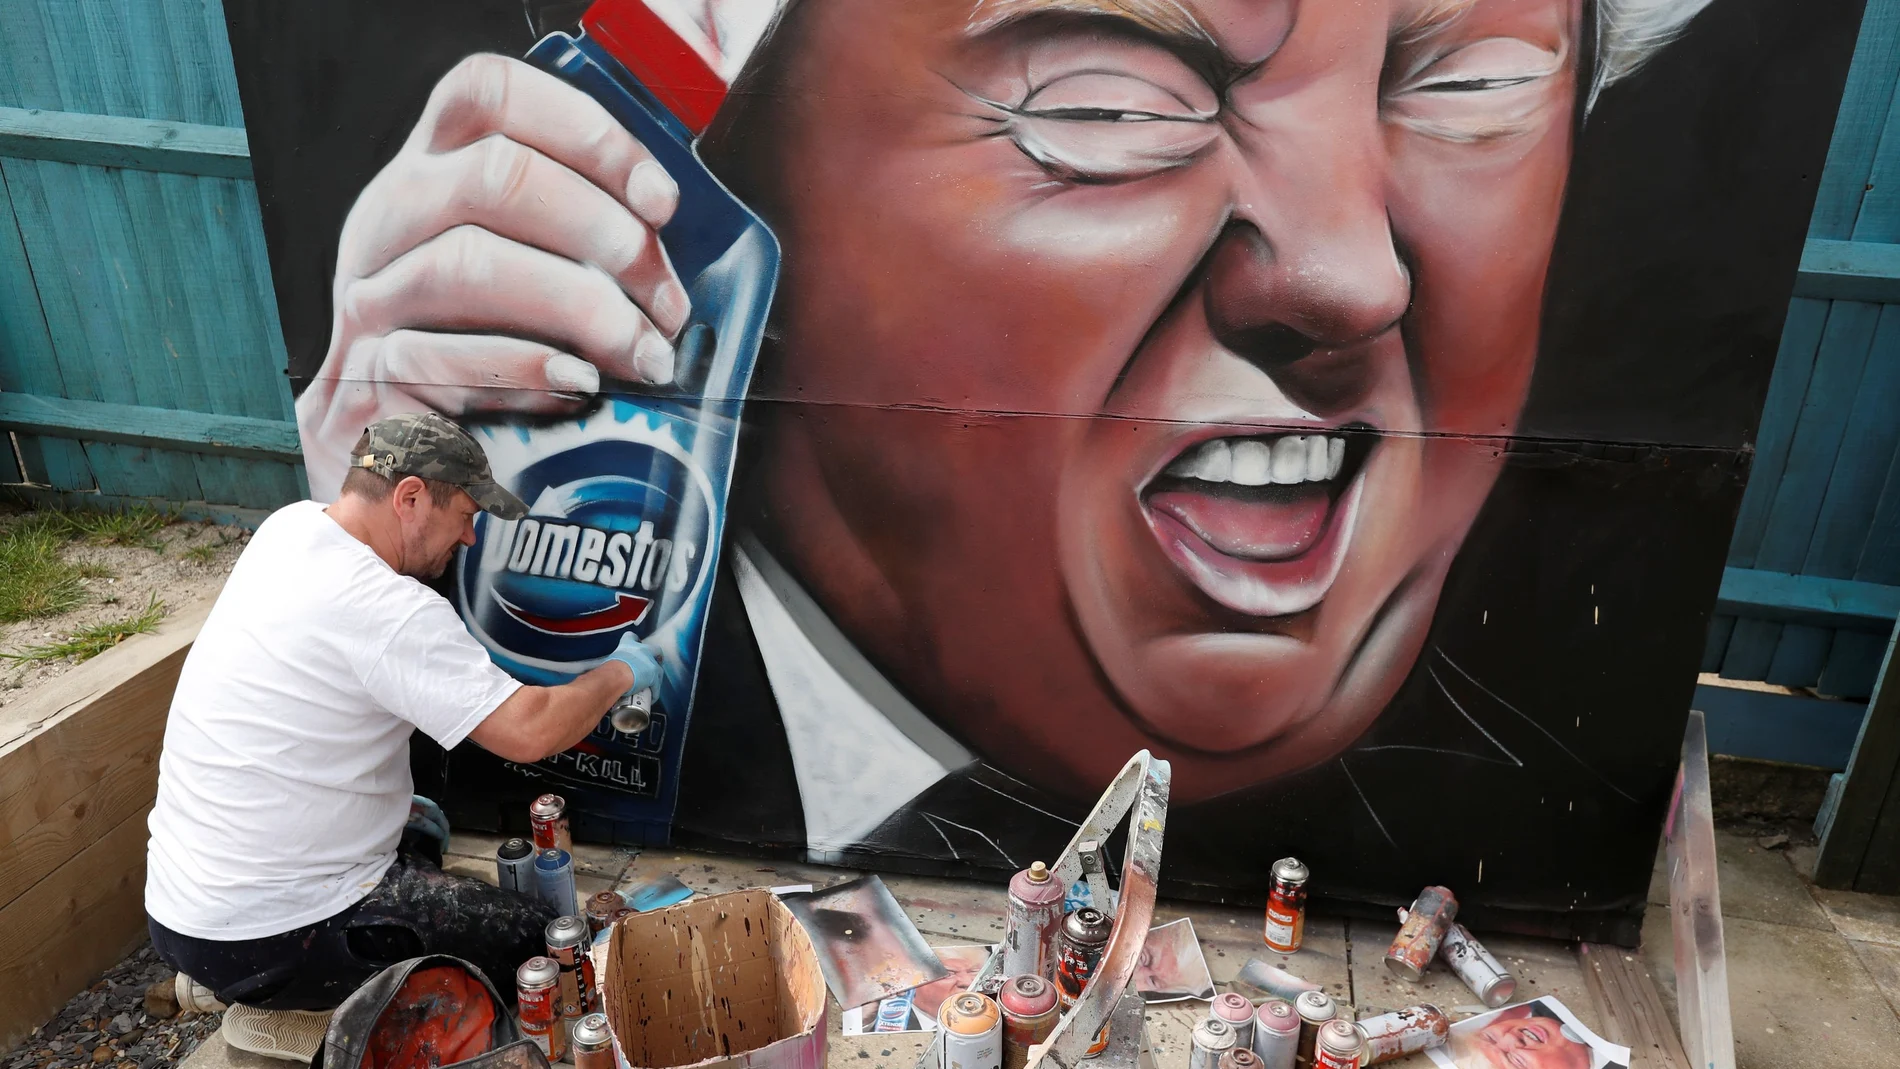 Un artista pinta un mural del presidente Trump con un conocido producto de limpieza, en alusión a sus últimas sugerencias para tratar el coronavirus.